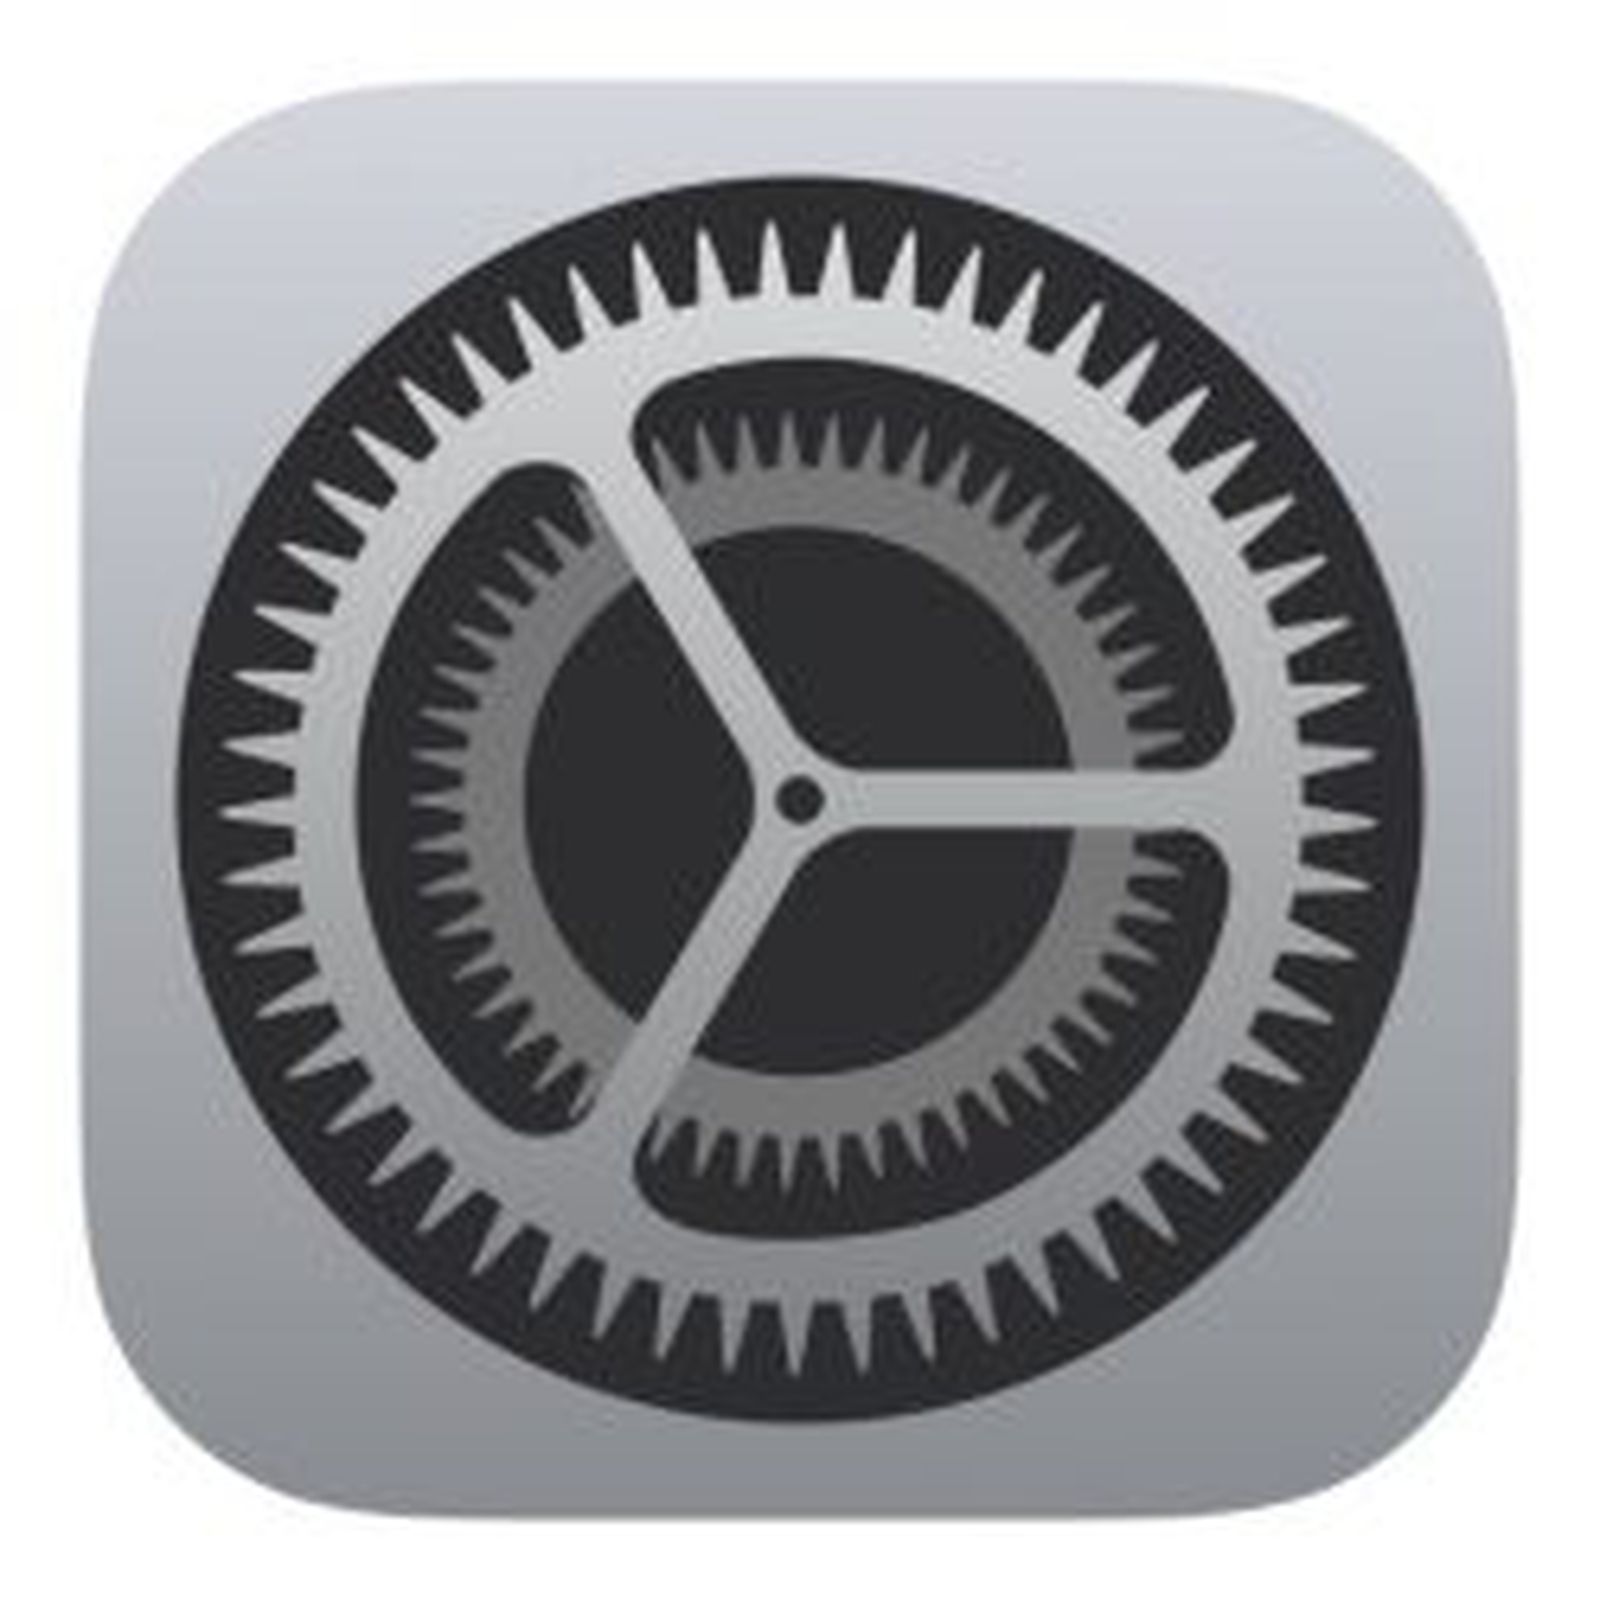 apple-settings-icon-19.jpg-250x250.jpg